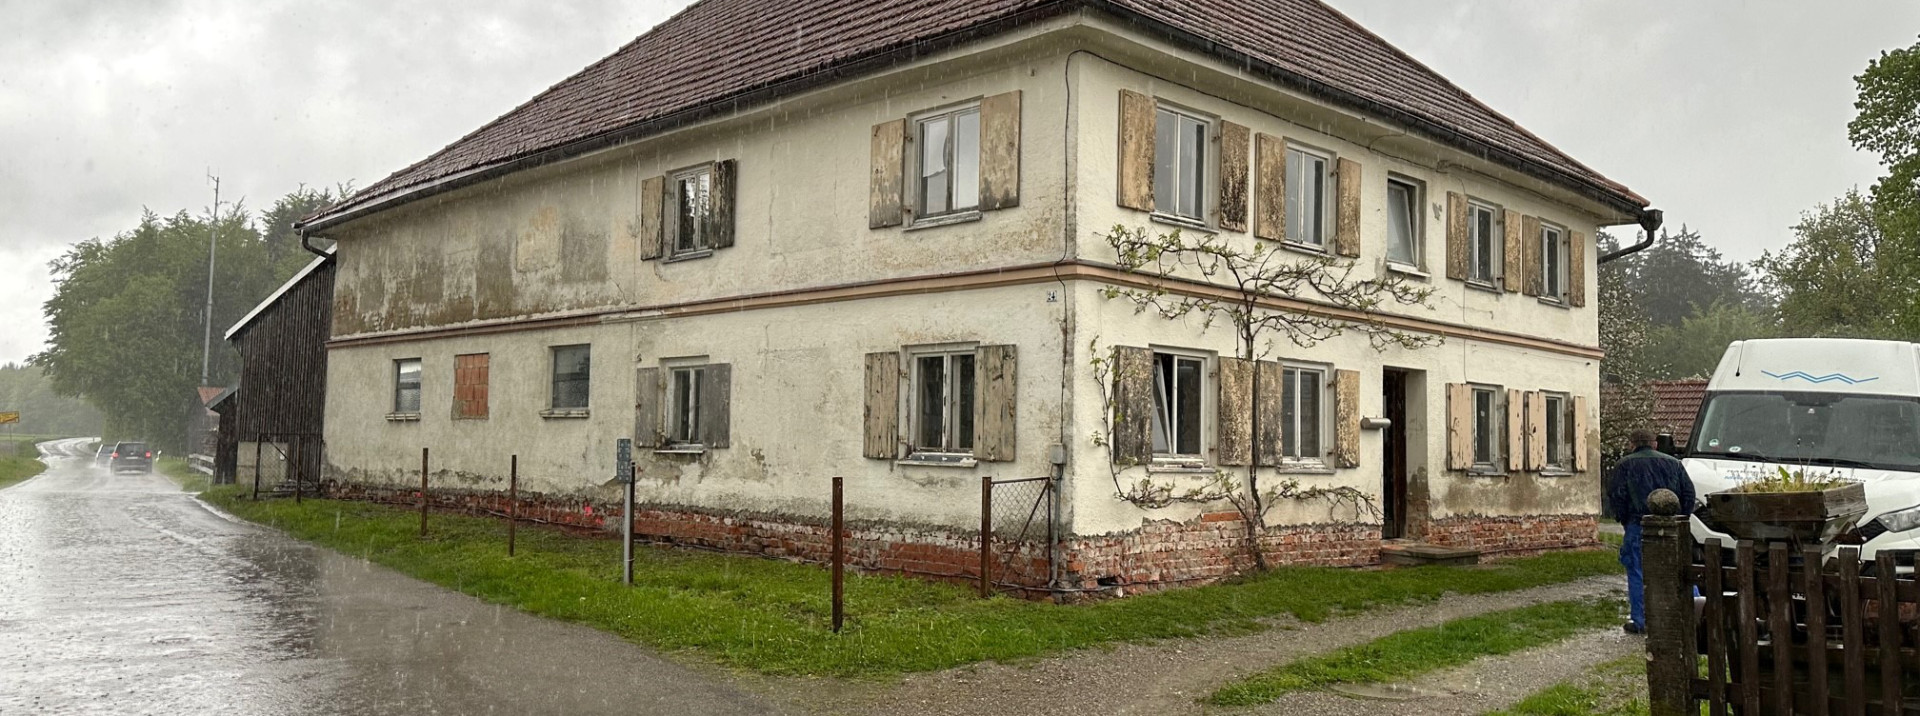 Elternhaus in Eisenburg bei Memmingen 